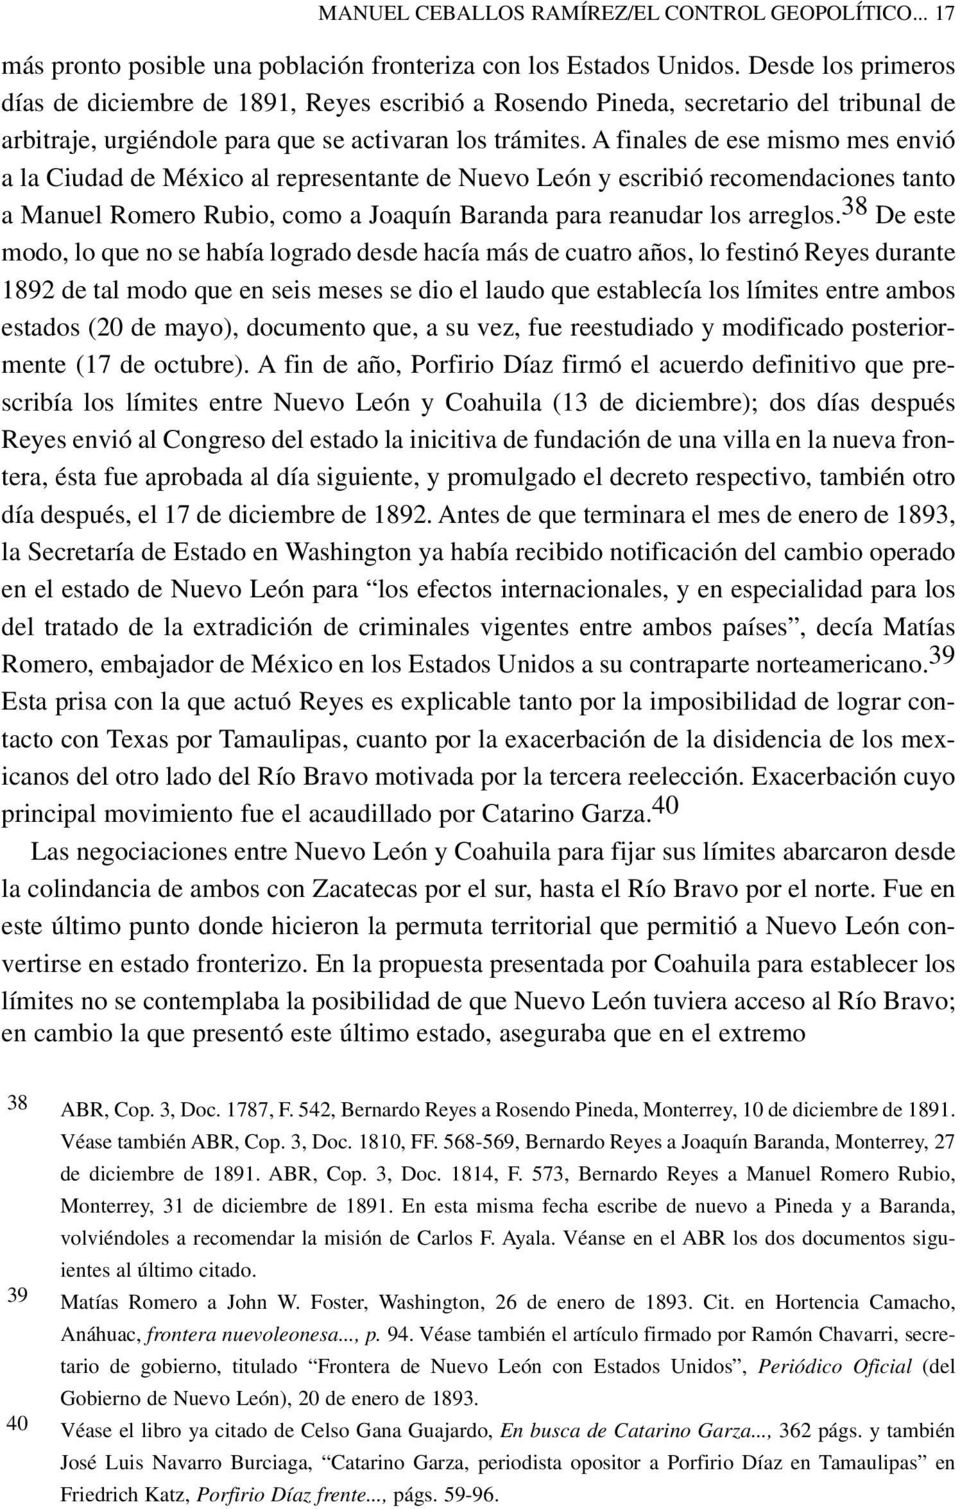 A finales de ese mismo mes envió a la Ciudad de México al representante de Nuevo León y escribió recomendaciones tanto a Manuel Romero Rubio, como a Joaquín Baranda para reanudar los arreglos.